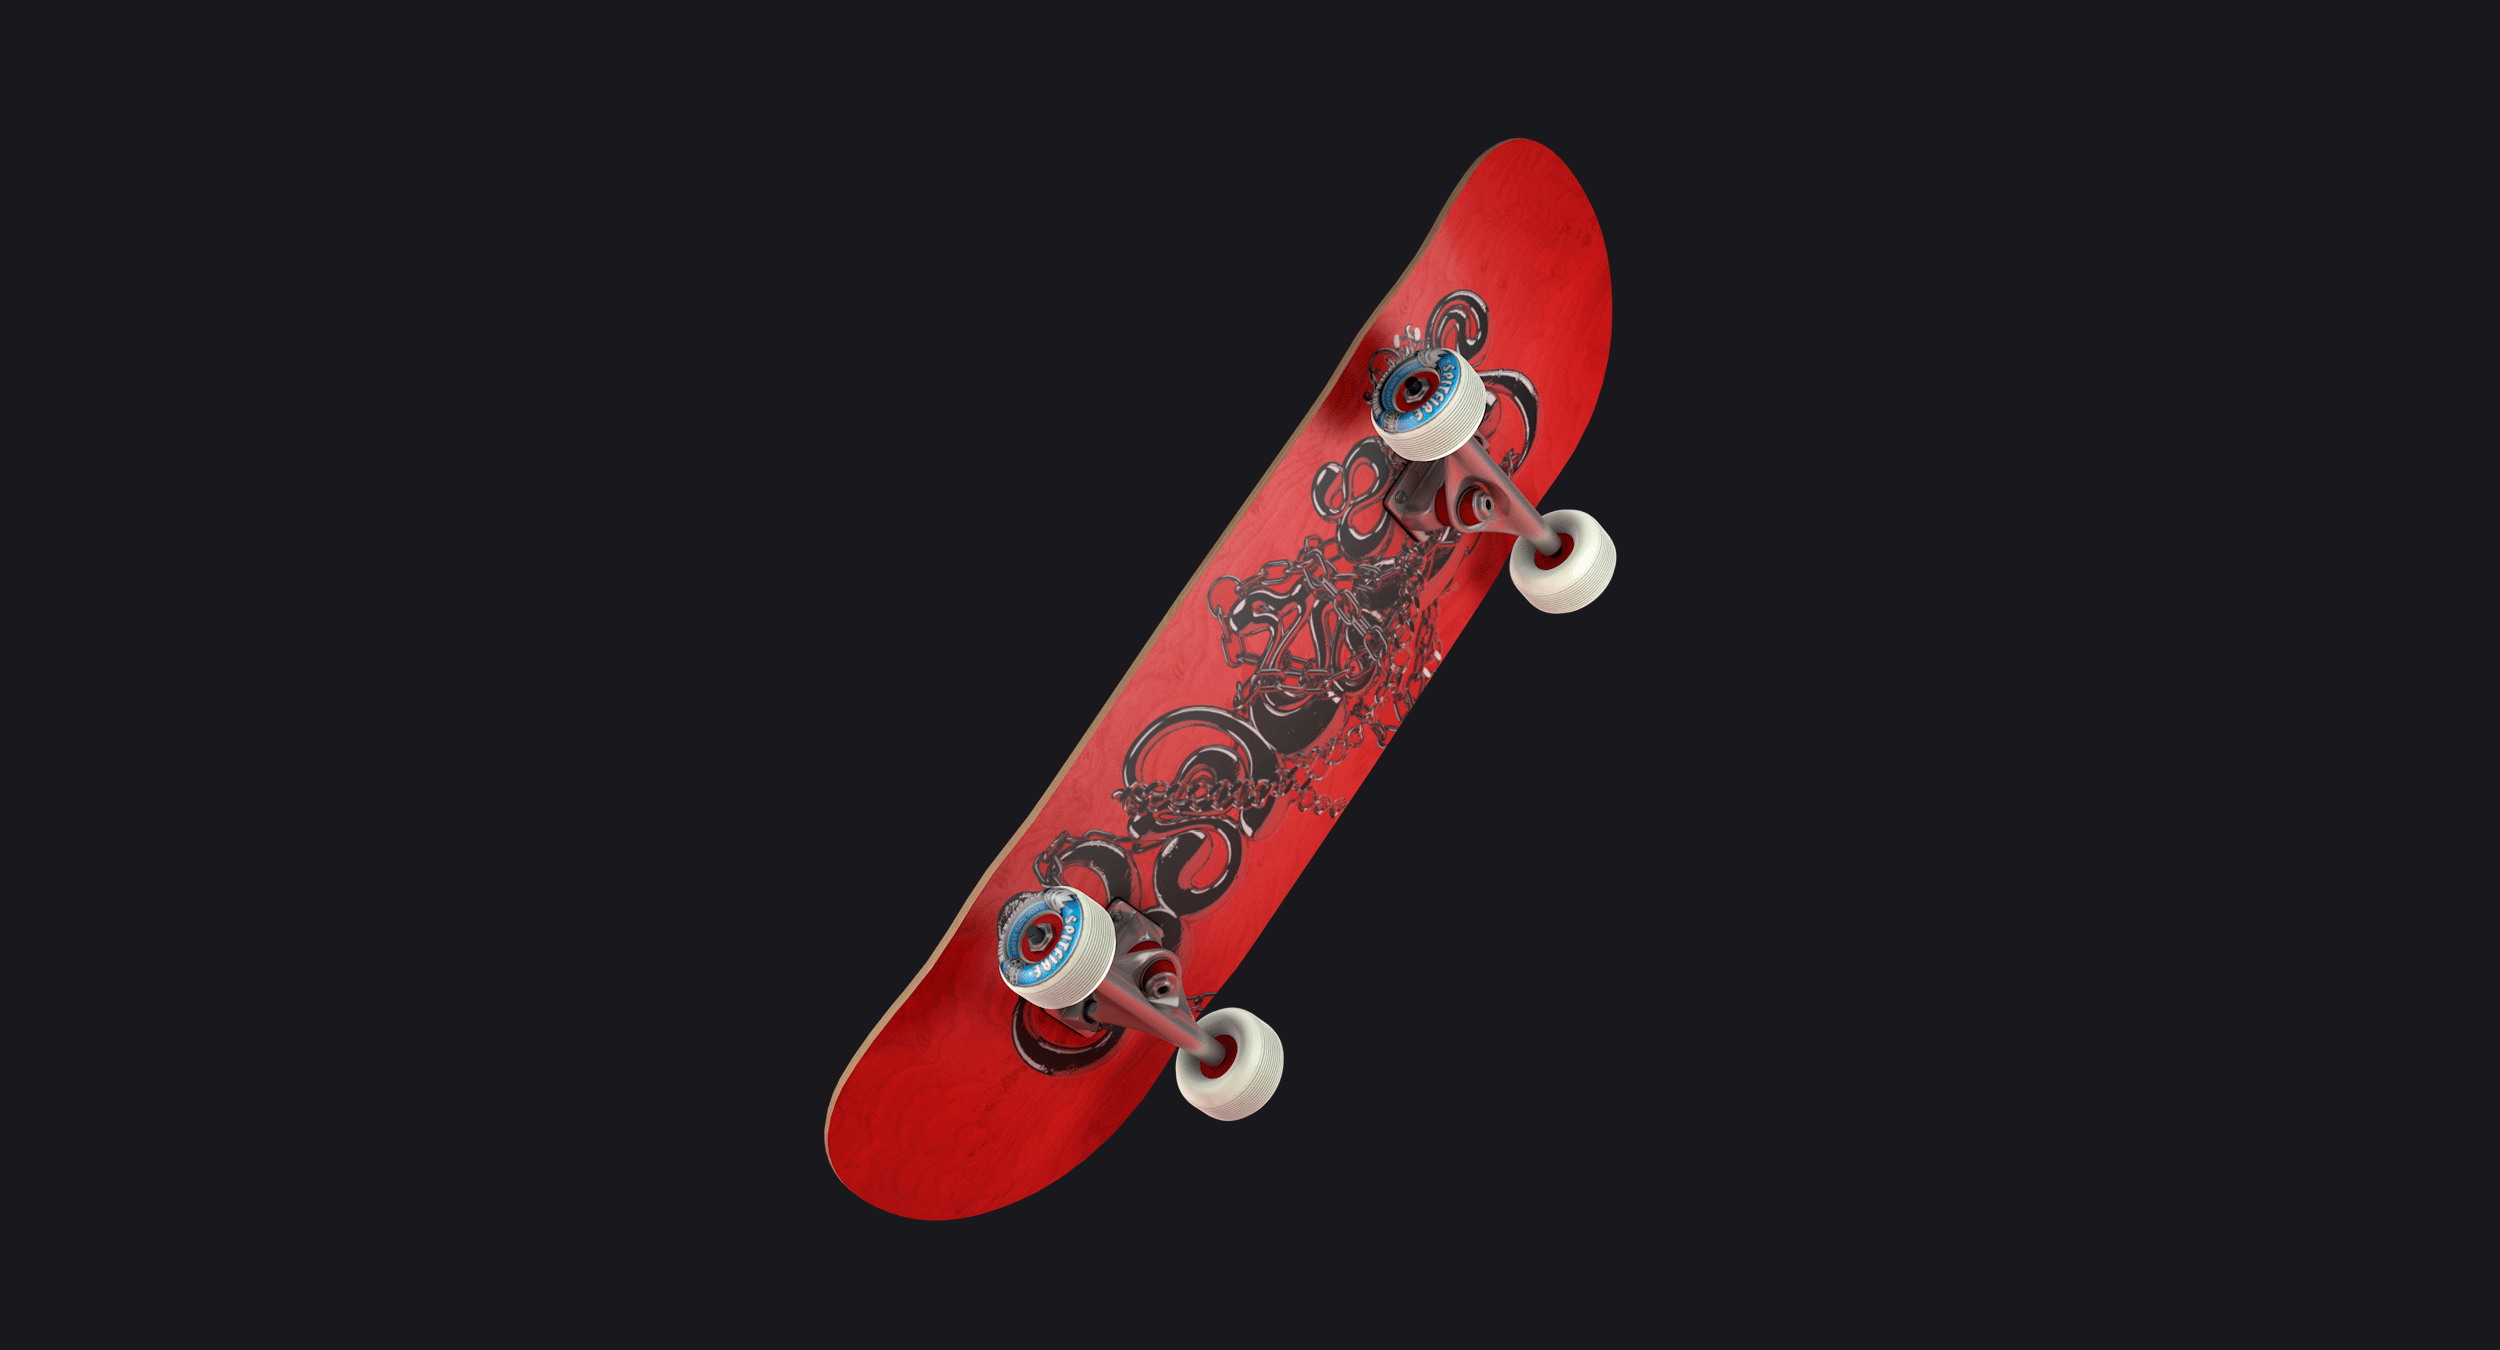 Blood Sweat Tears lettering skateboard